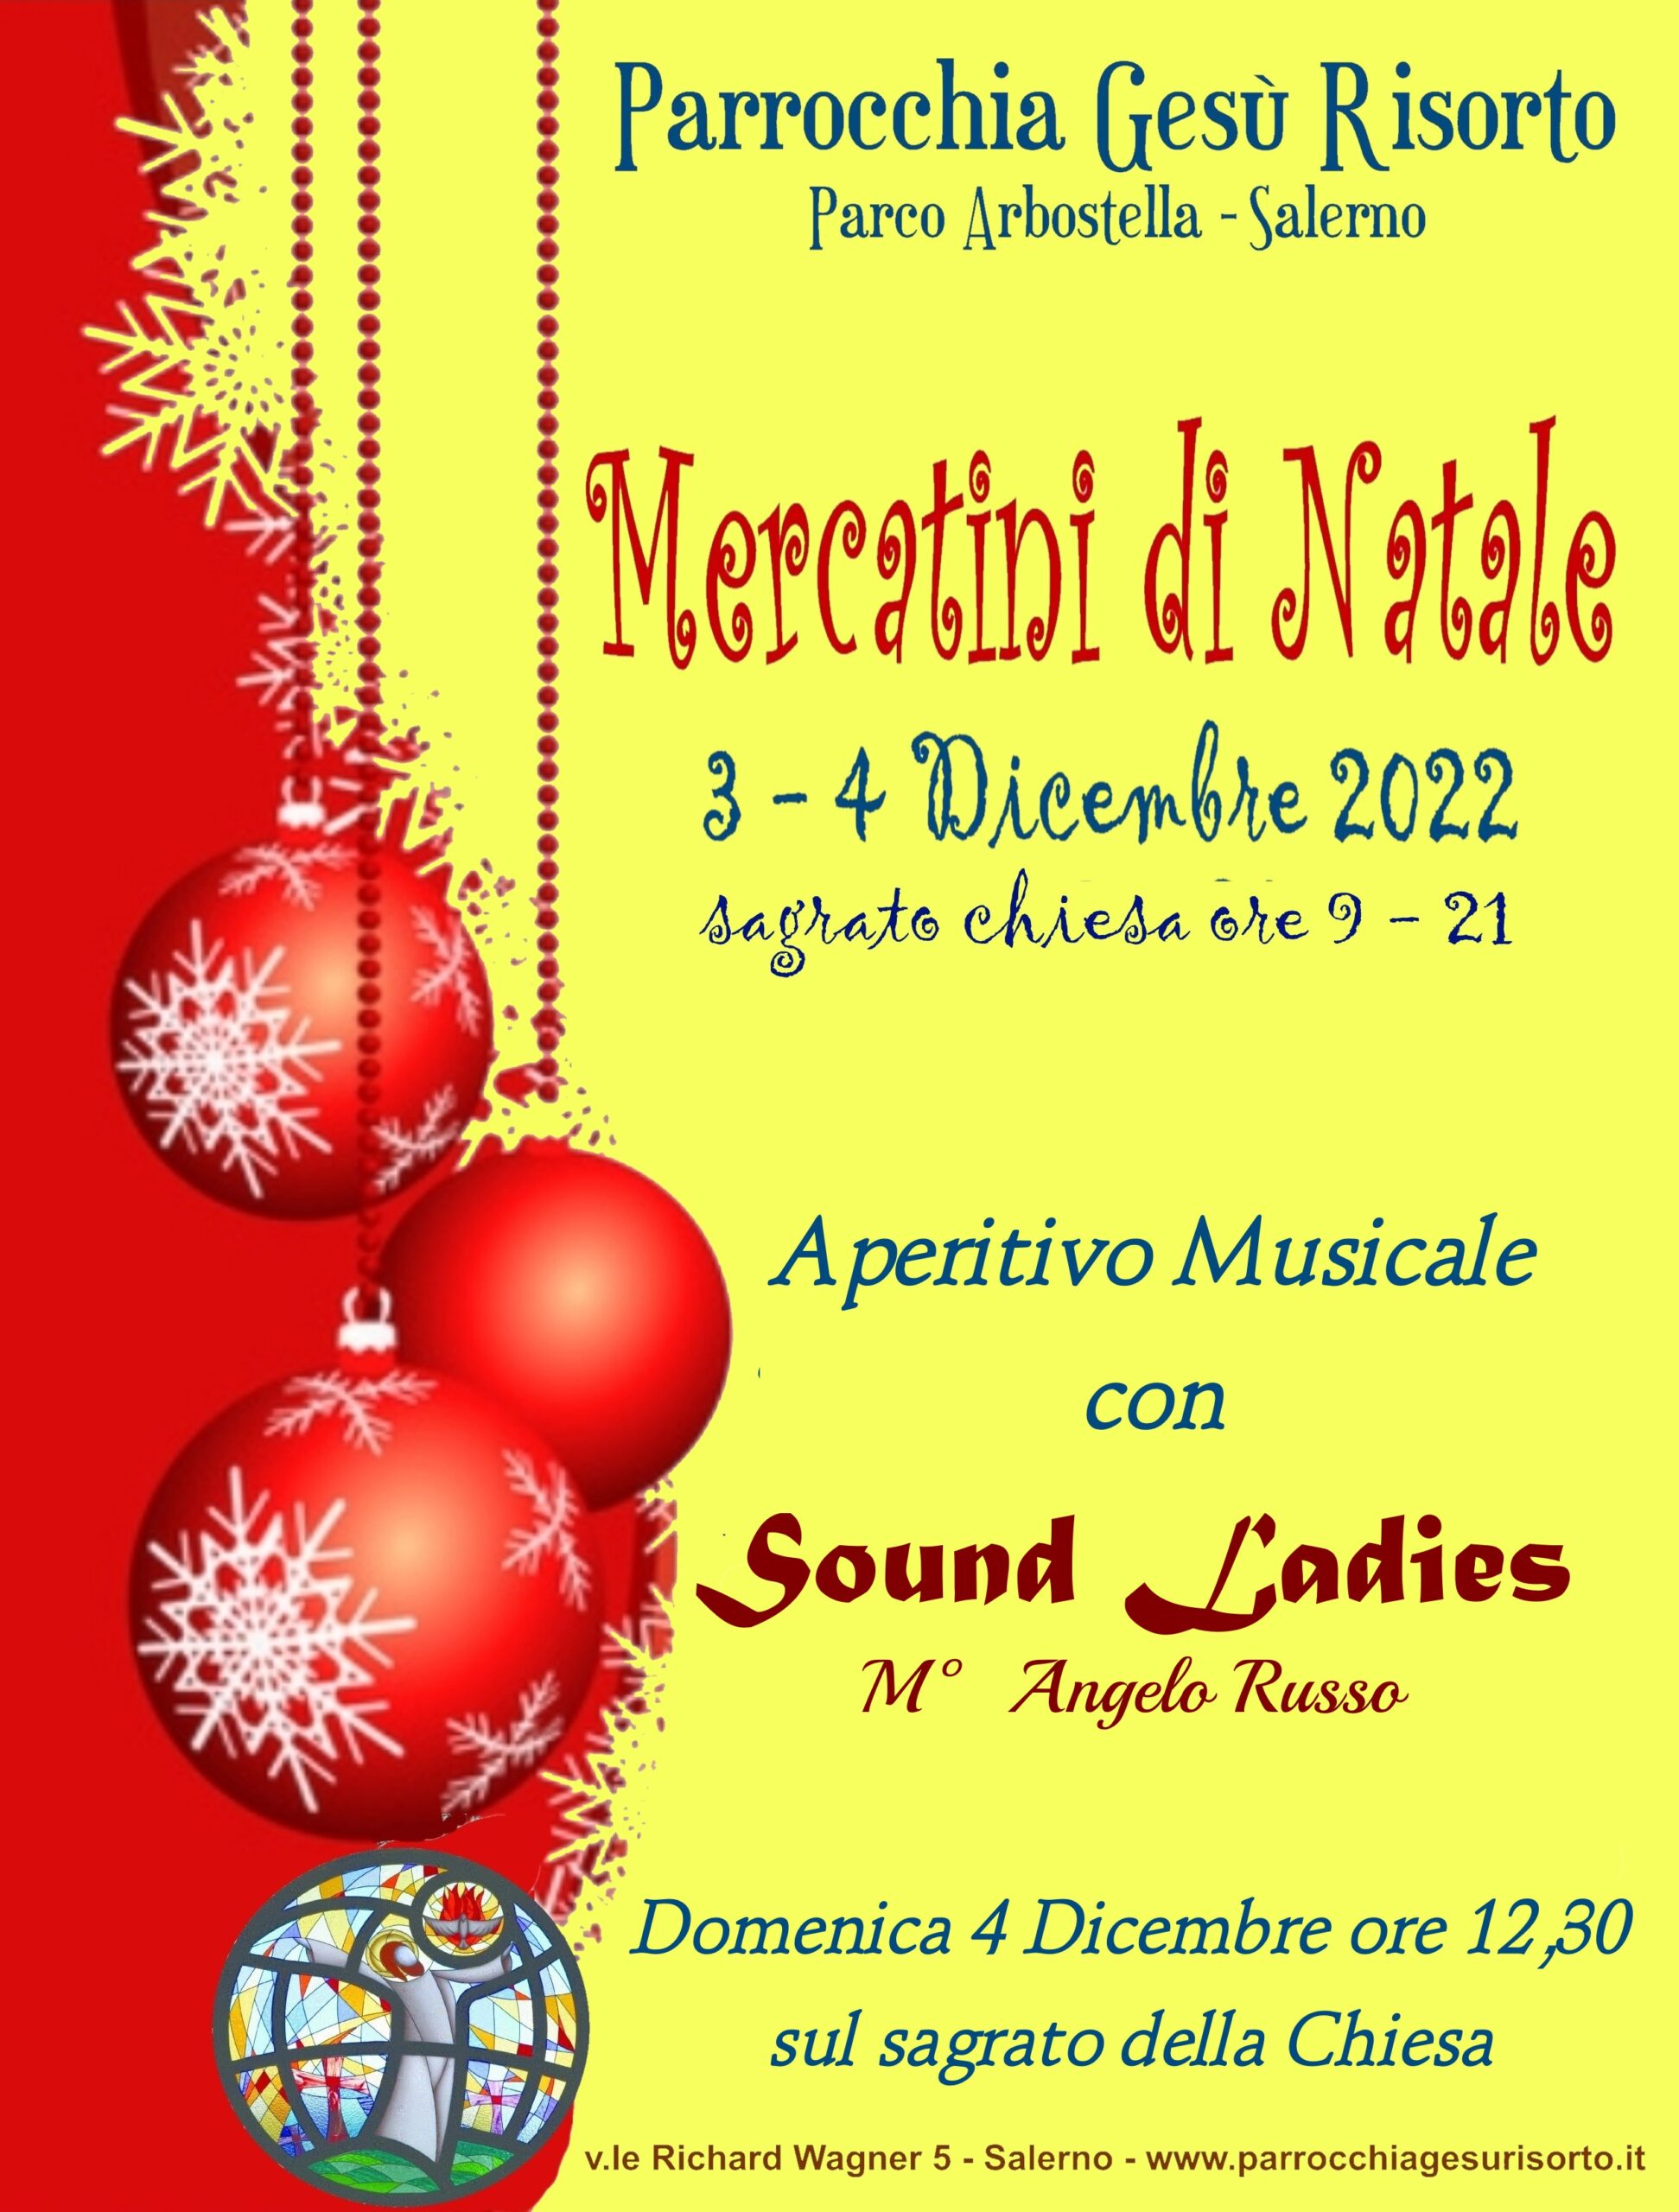 Salerno: Parrocchia Gesù Risorto, “Mercatini di Natale” 3 – 4 Dicembre 2022